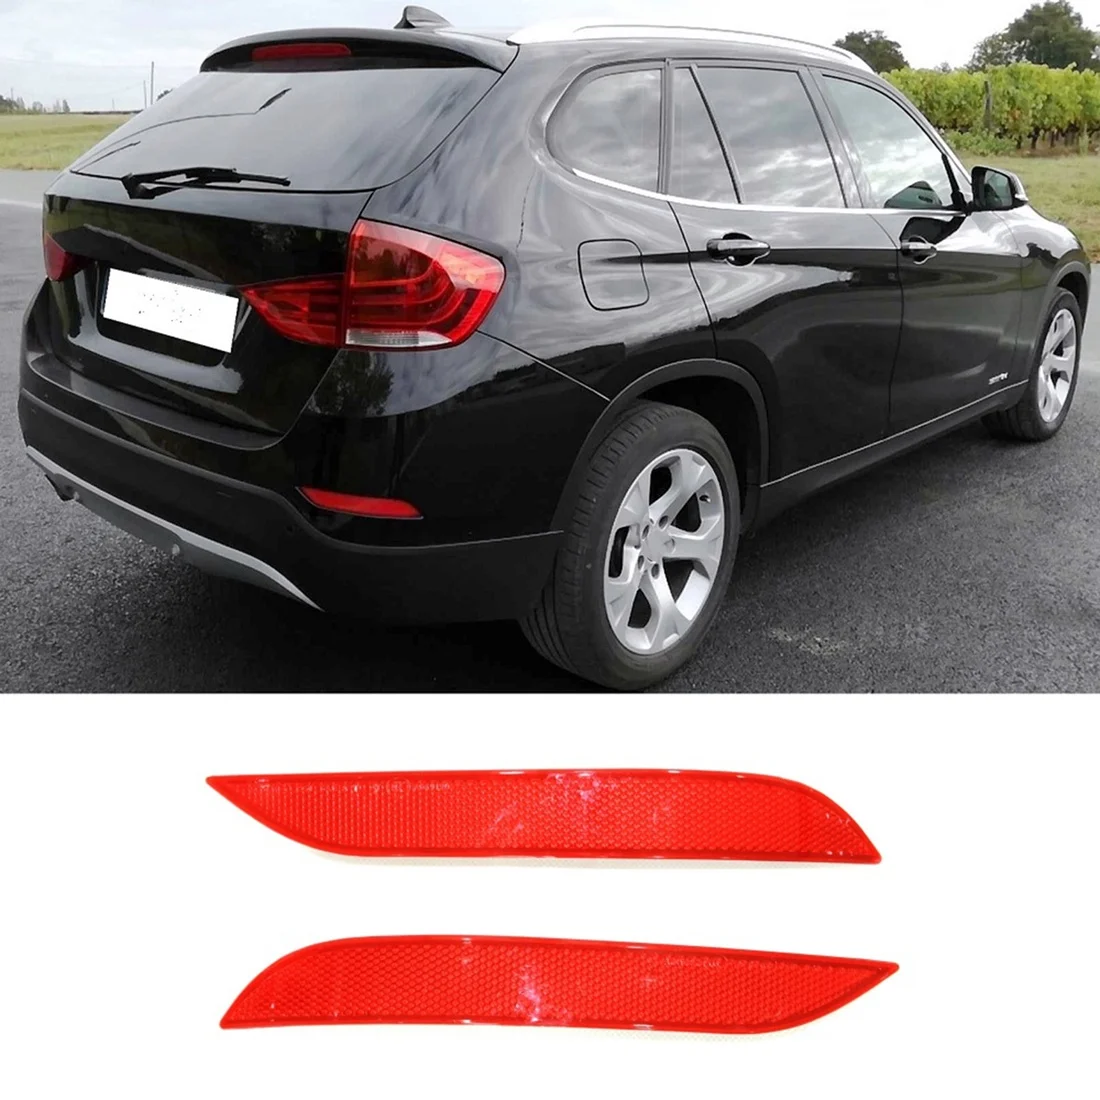 Накладка на крышку отражателя заднего бампера автомобиля 63147314883 63147314884 для BMW-X1 E84 2013 2014 2015, слева + справа 2 шт. 1